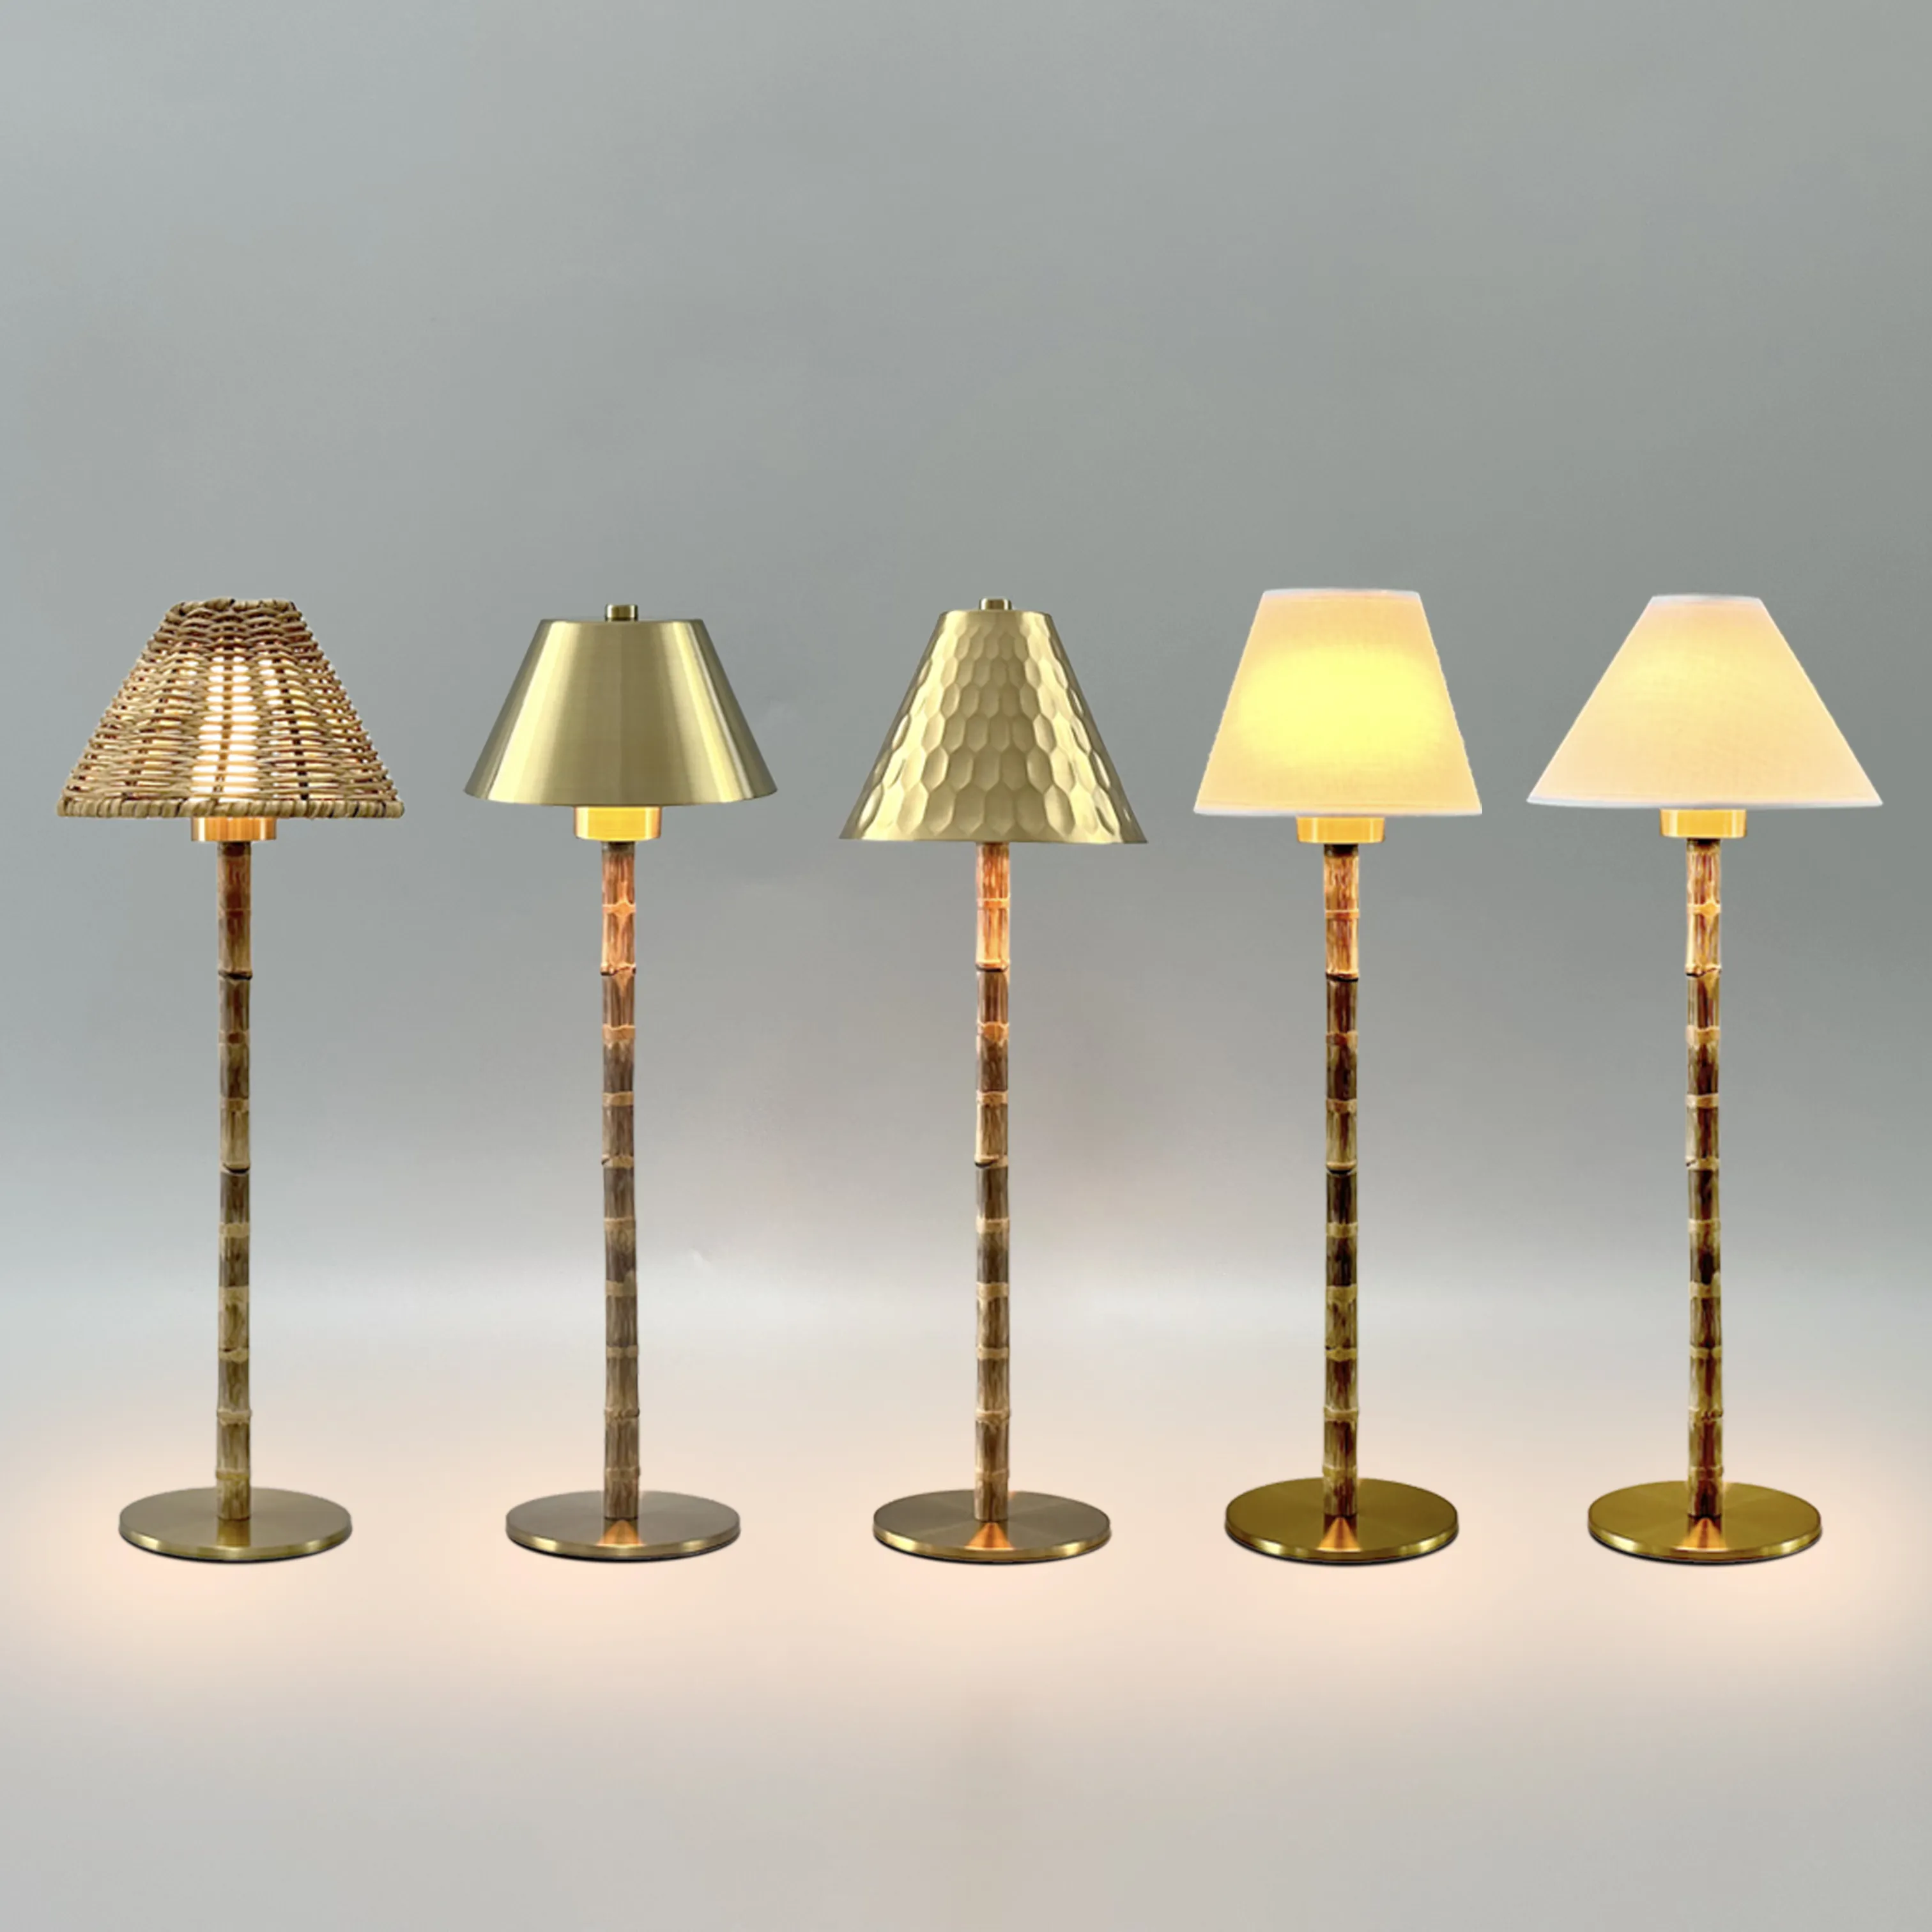 Бамбуковый базовый светильник Настольная лампа металлический абажур сменный свет сенсорный беспроводной usb перезаряжаемая настольная лампа